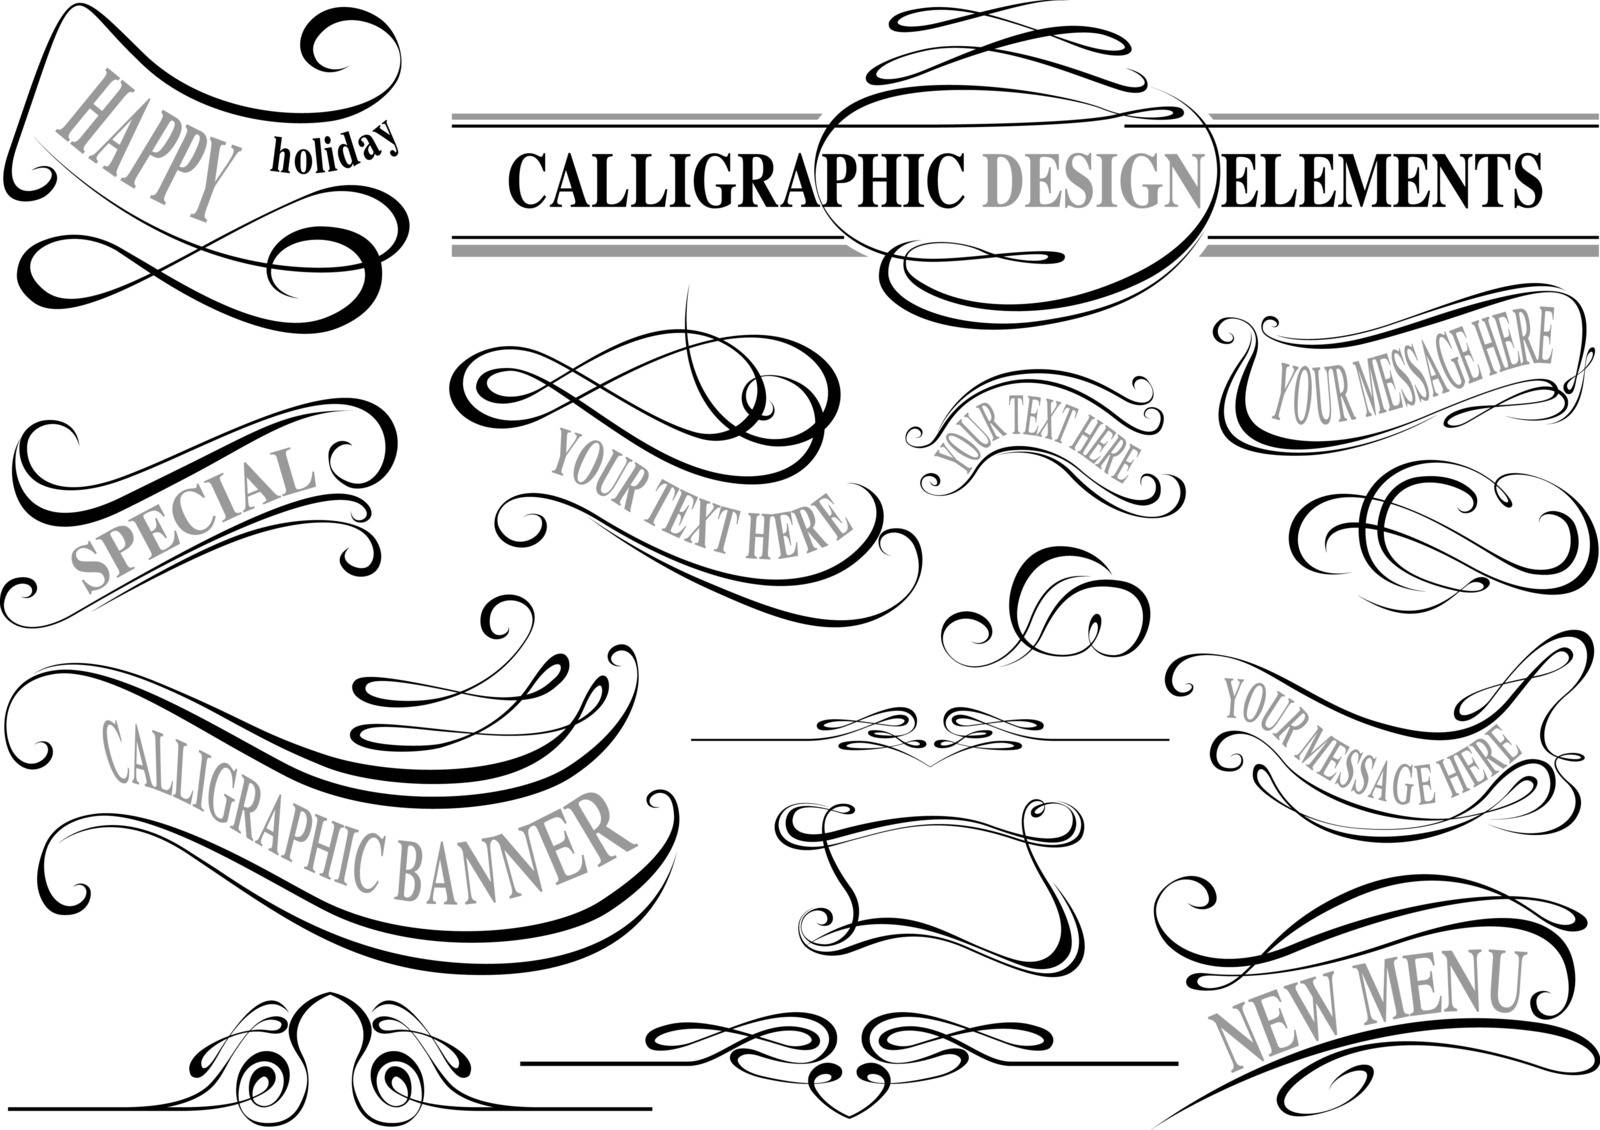 Calligraphic Elements by illustratorCZ